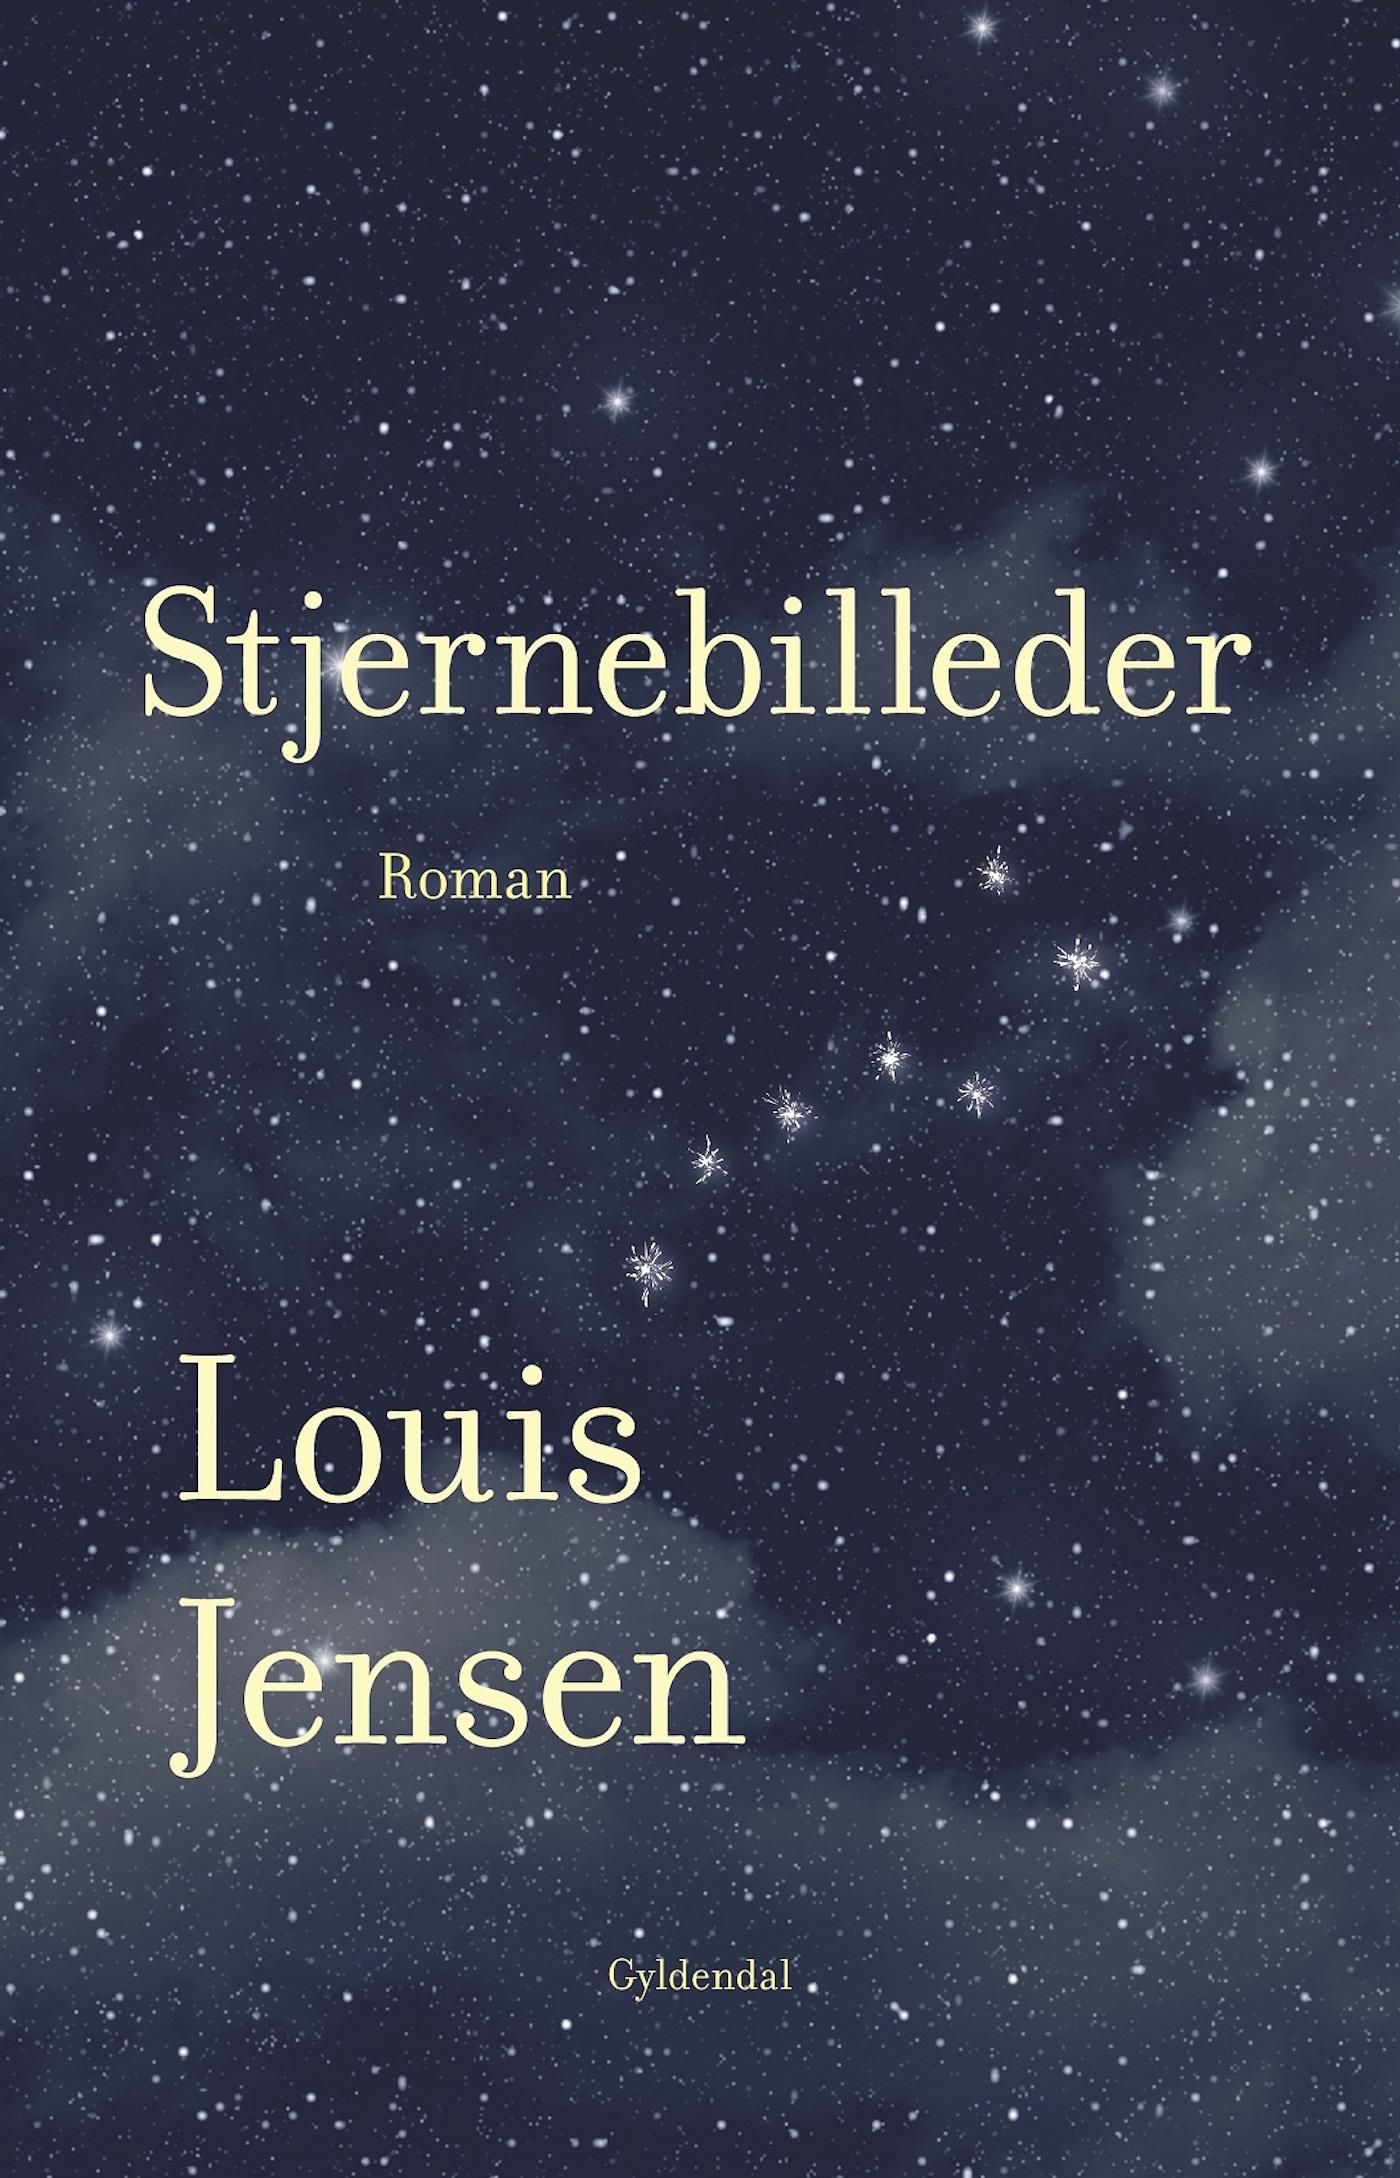 Stjernebilleder, e-bog af Louis Jensen